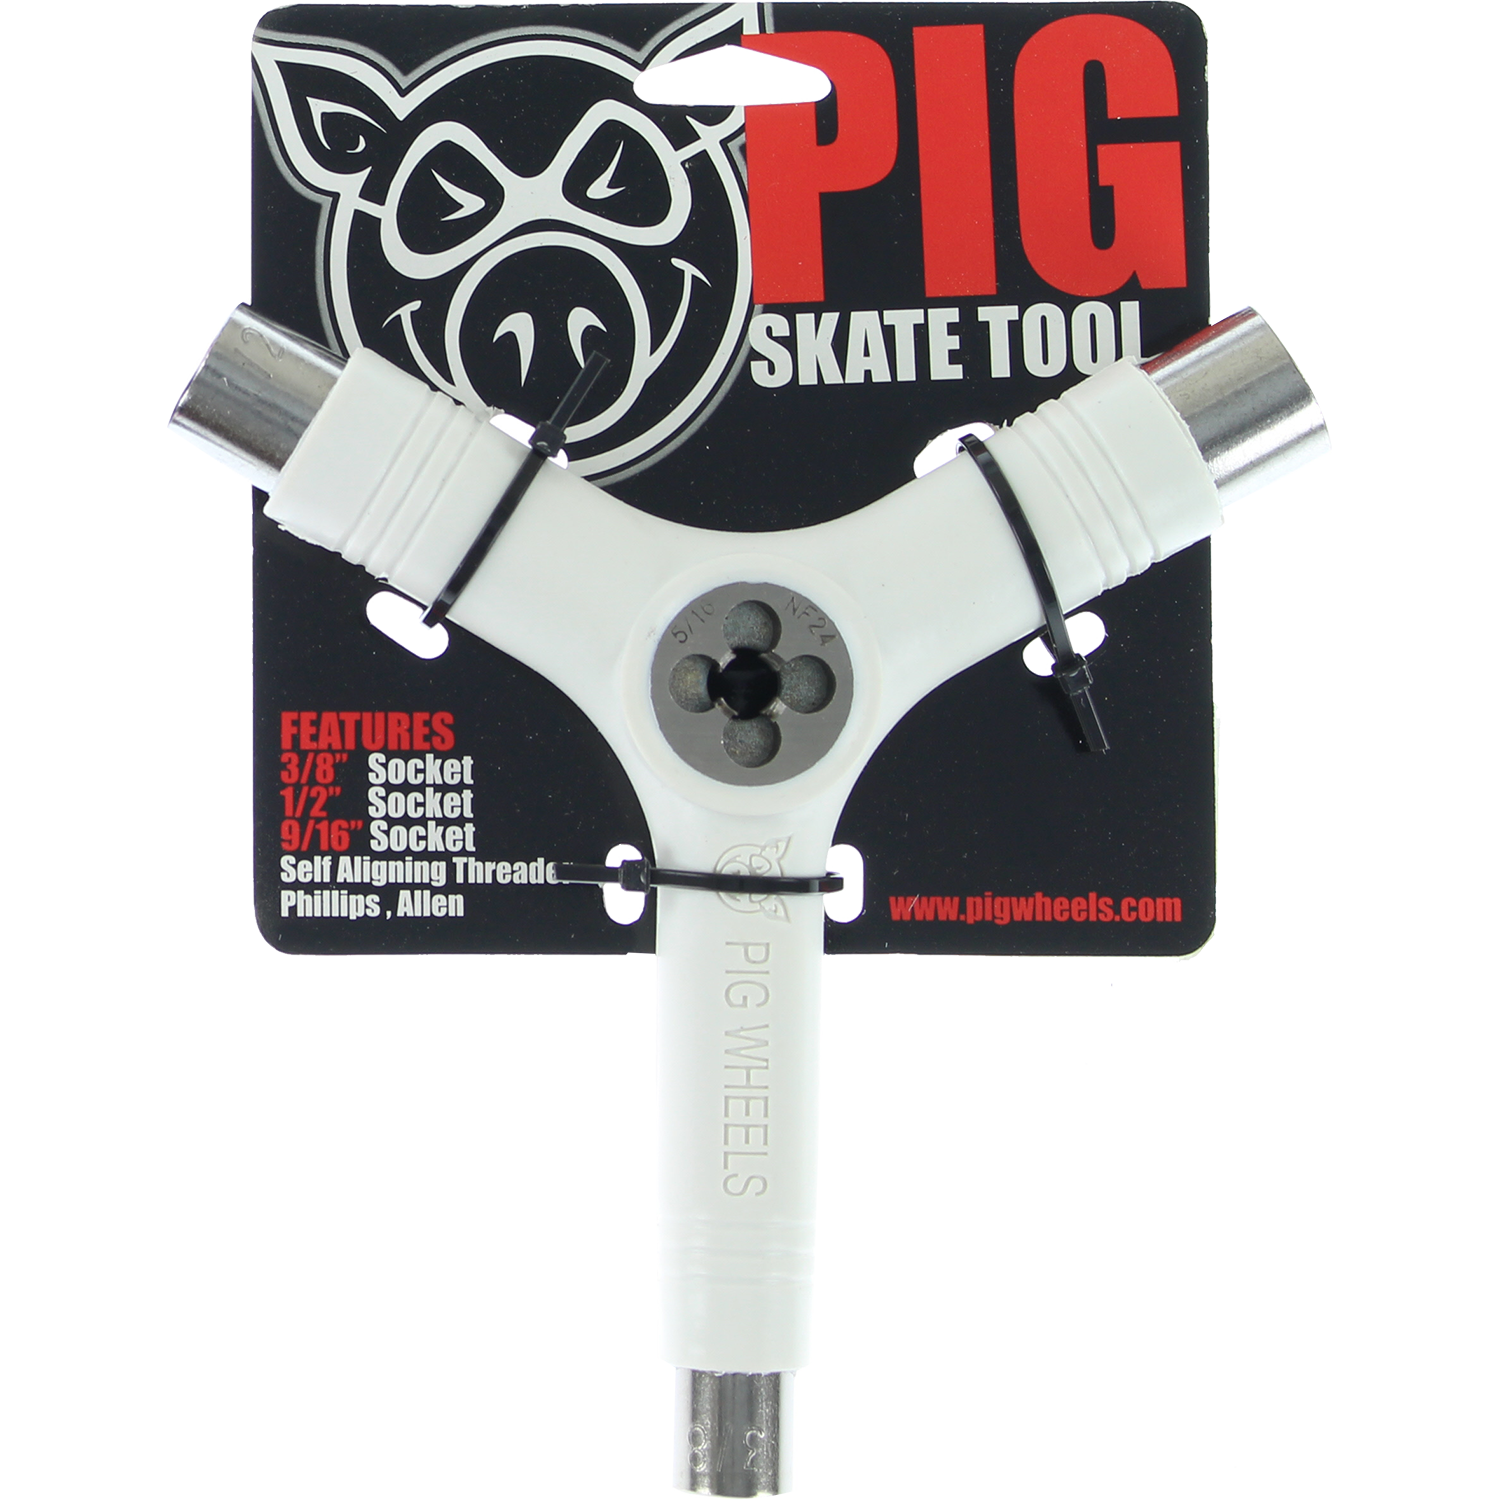 Pig Skate Tool-White Tri-Socket/Threader